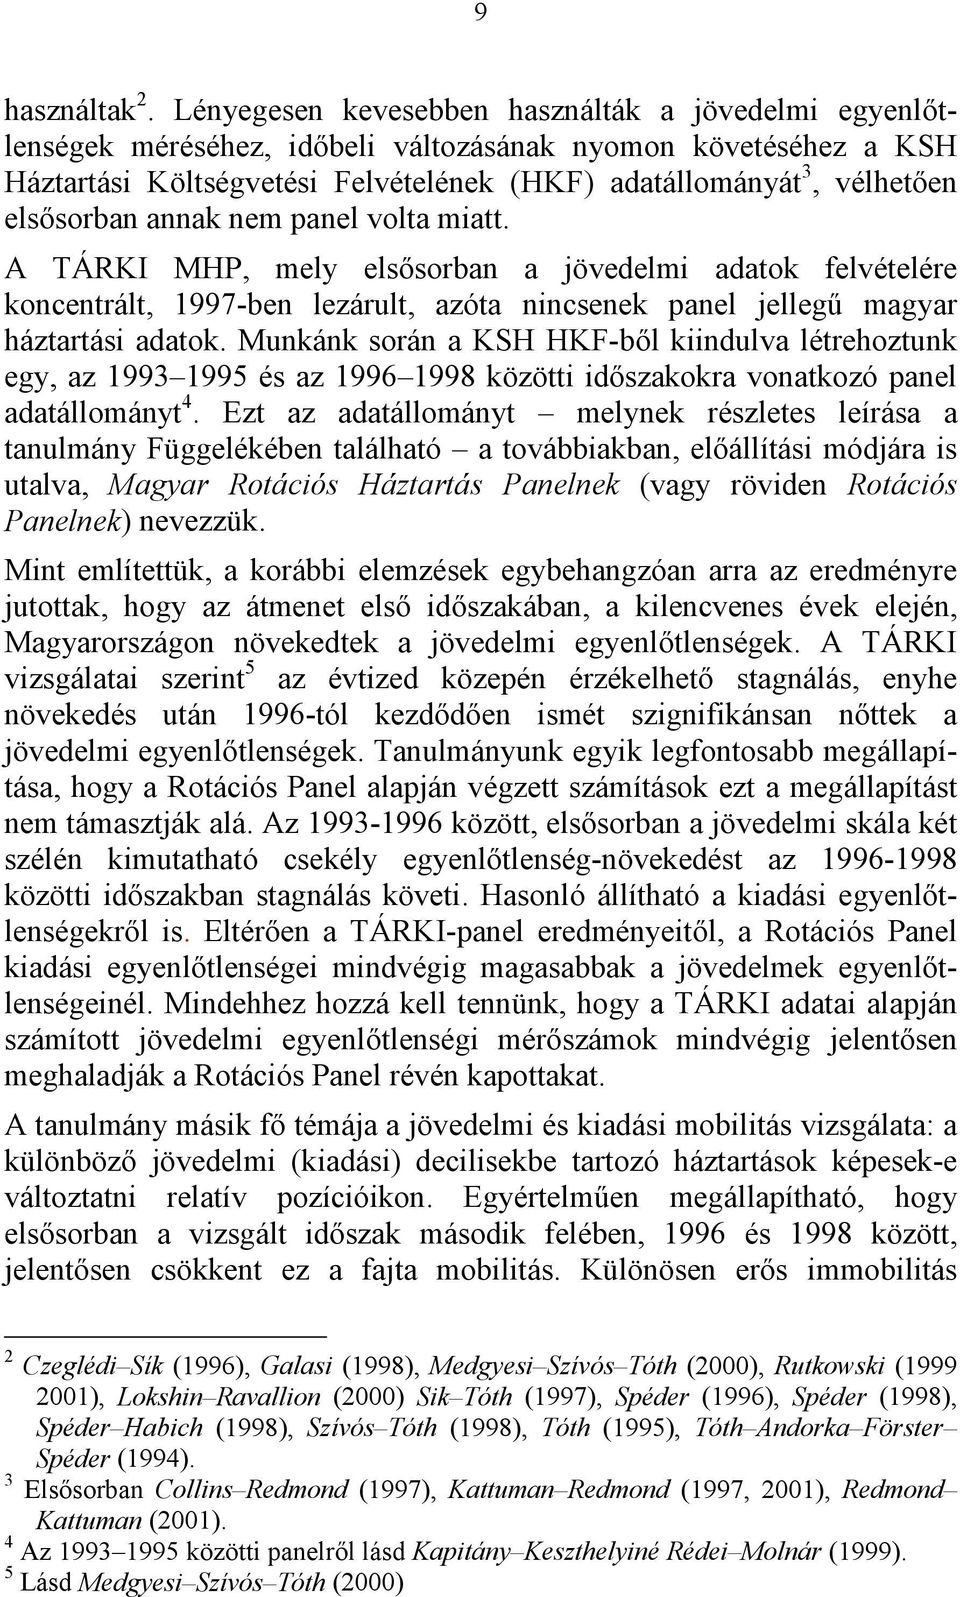 elsősorban annak nem panel volta miatt. A TÁRKI MHP, mely elsősorban a jövedelmi adatok felvételére koncentrált, 1997-ben lezárult, azóta nincsenek panel jellegű magyar háztartási adatok.